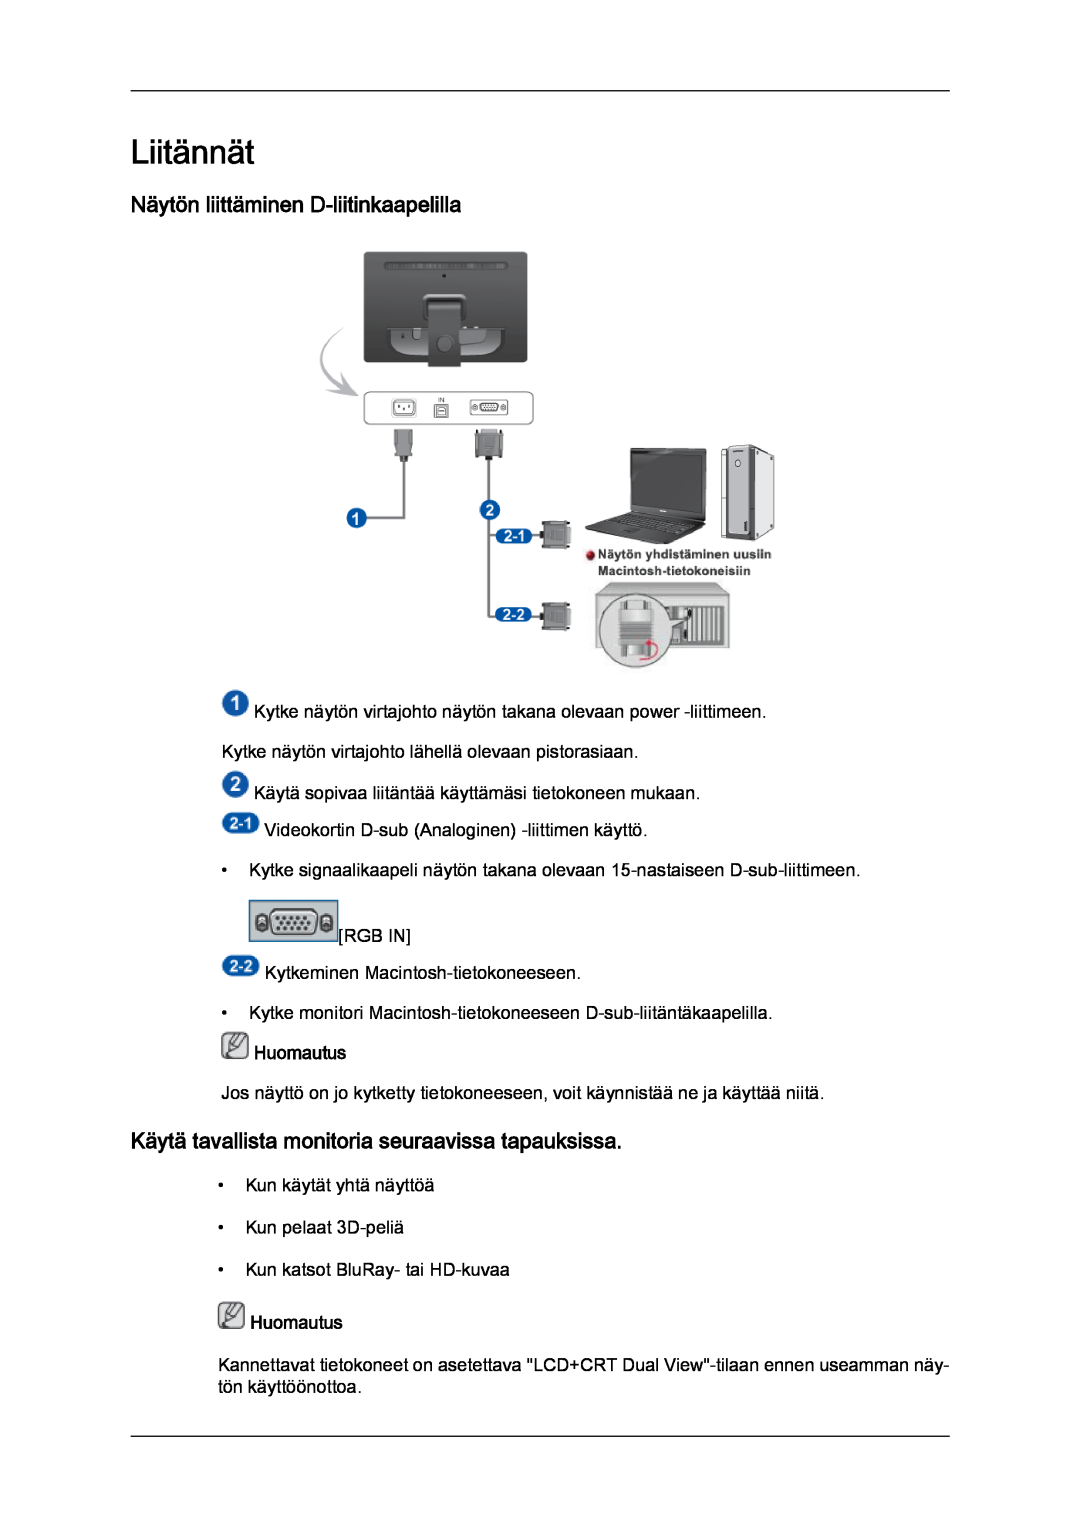 Samsung LS22LFUGF/EN Liitännät, Näytön liittäminen D-liitinkaapelilla, Käytä tavallista monitoria seuraavissa tapauksissa 